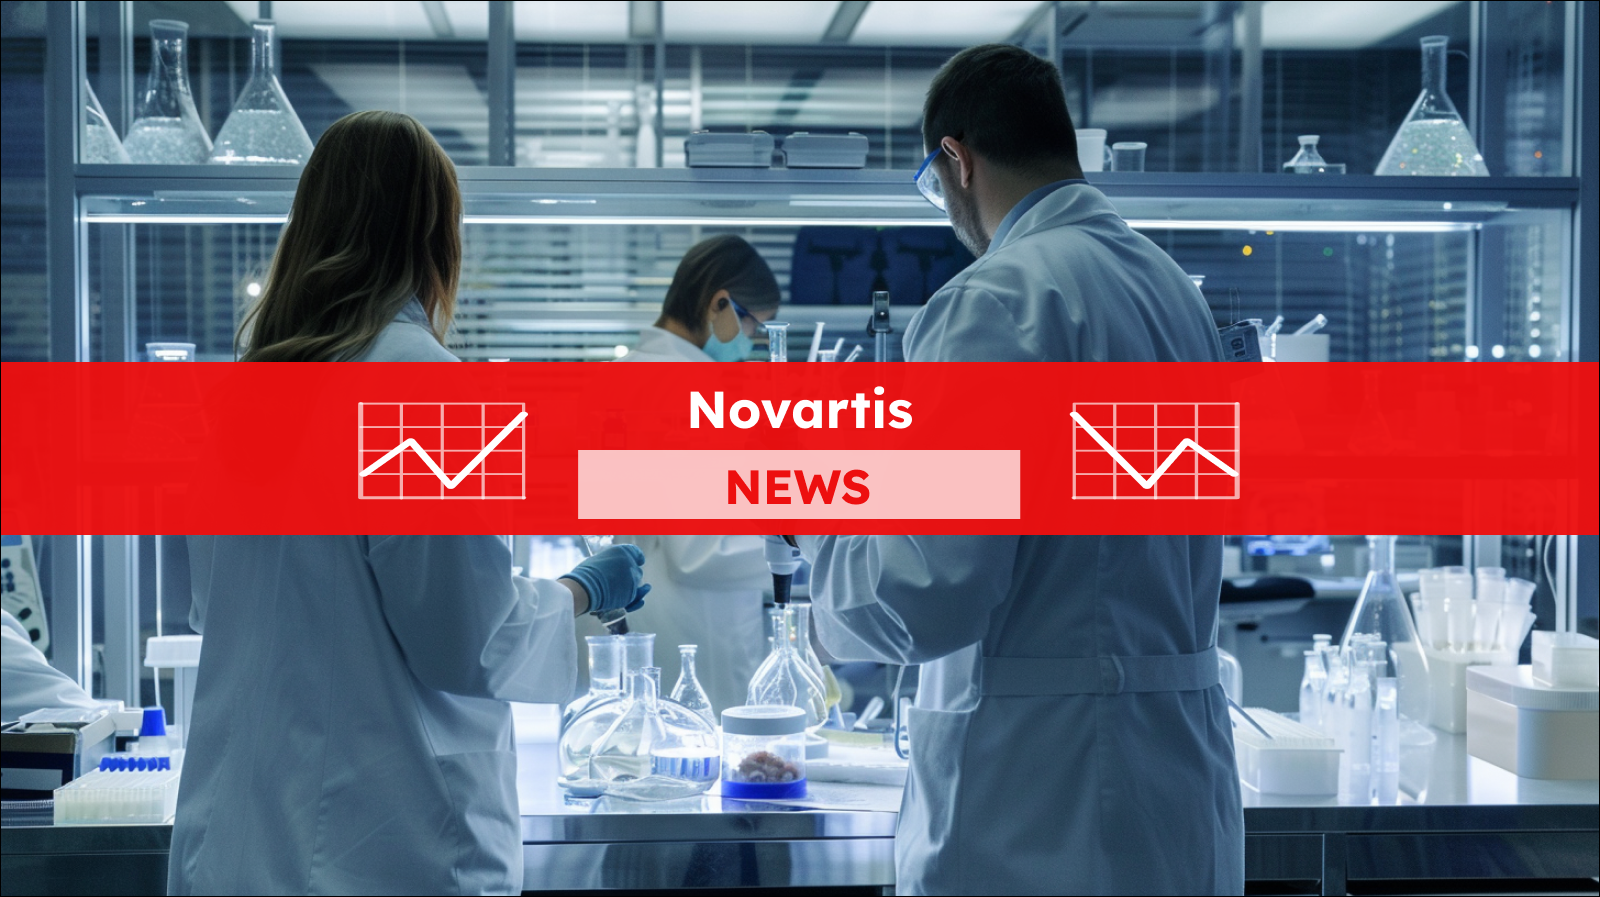 Forscher in weißen Labormänteln arbeiten konzentriert an Experimenten in einem modernen Labor, mit einem Novartis NEWS Banner